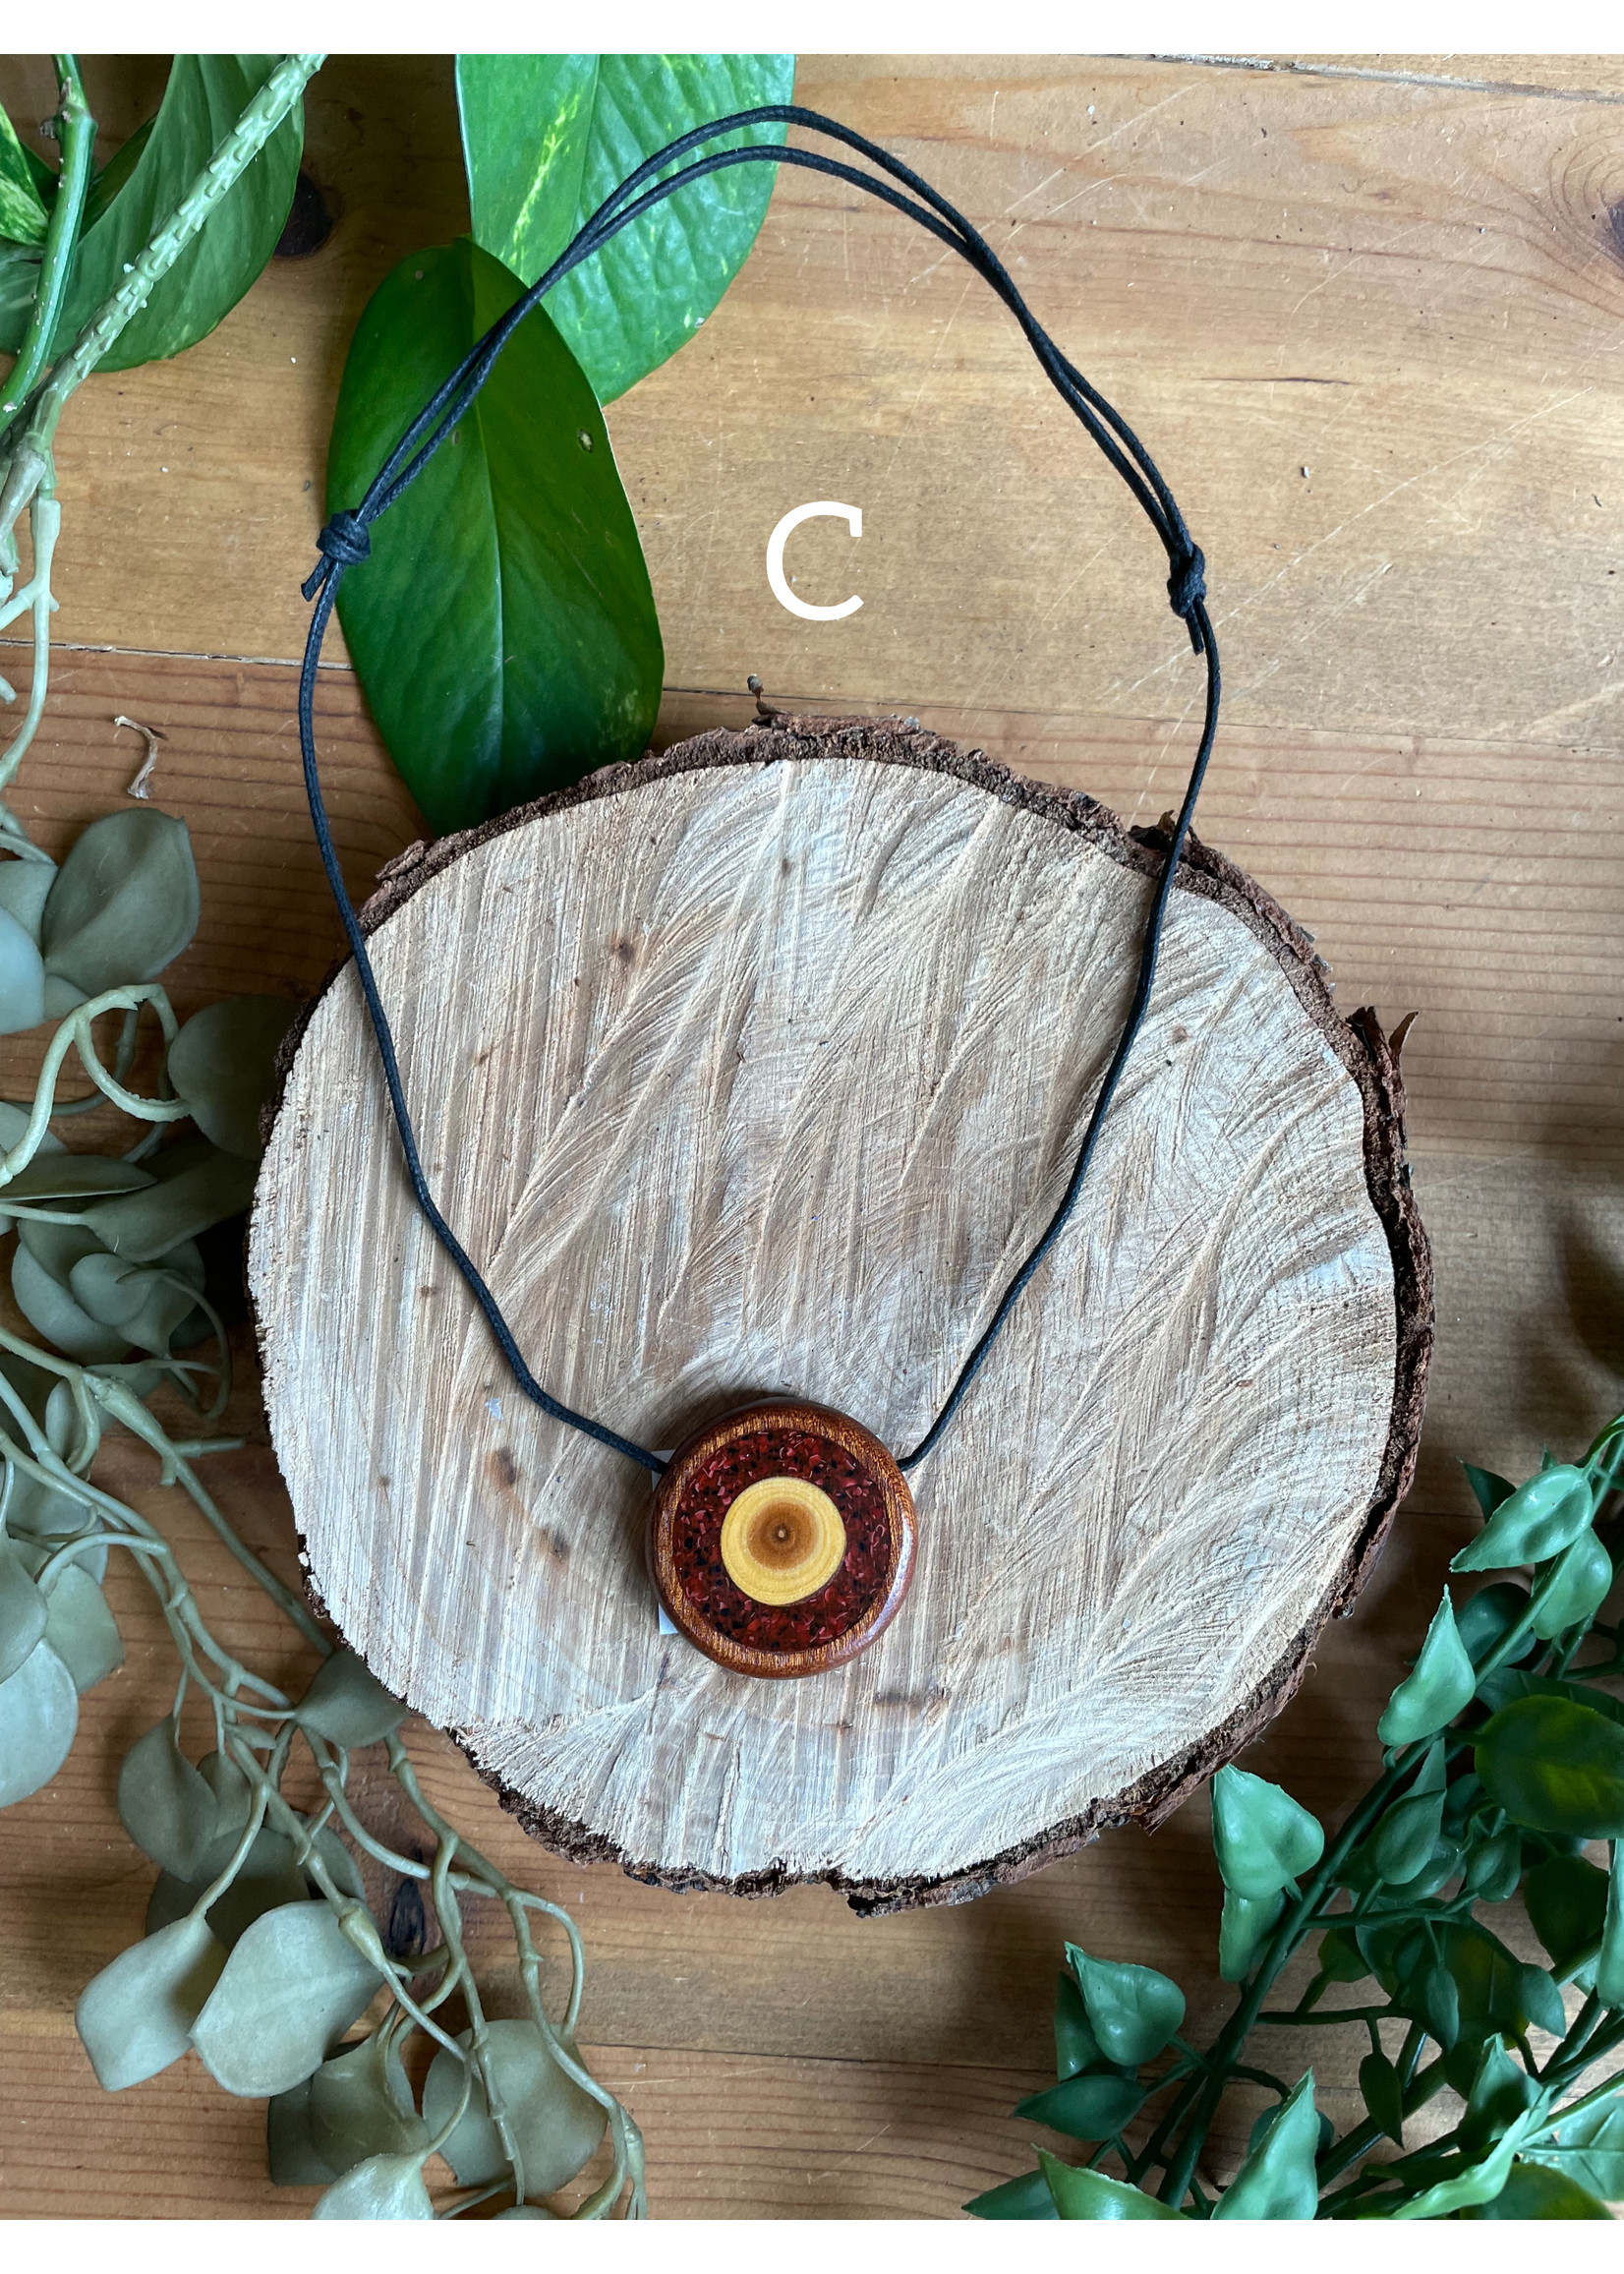 Plan B Artisans Wood Pendant Necklaces